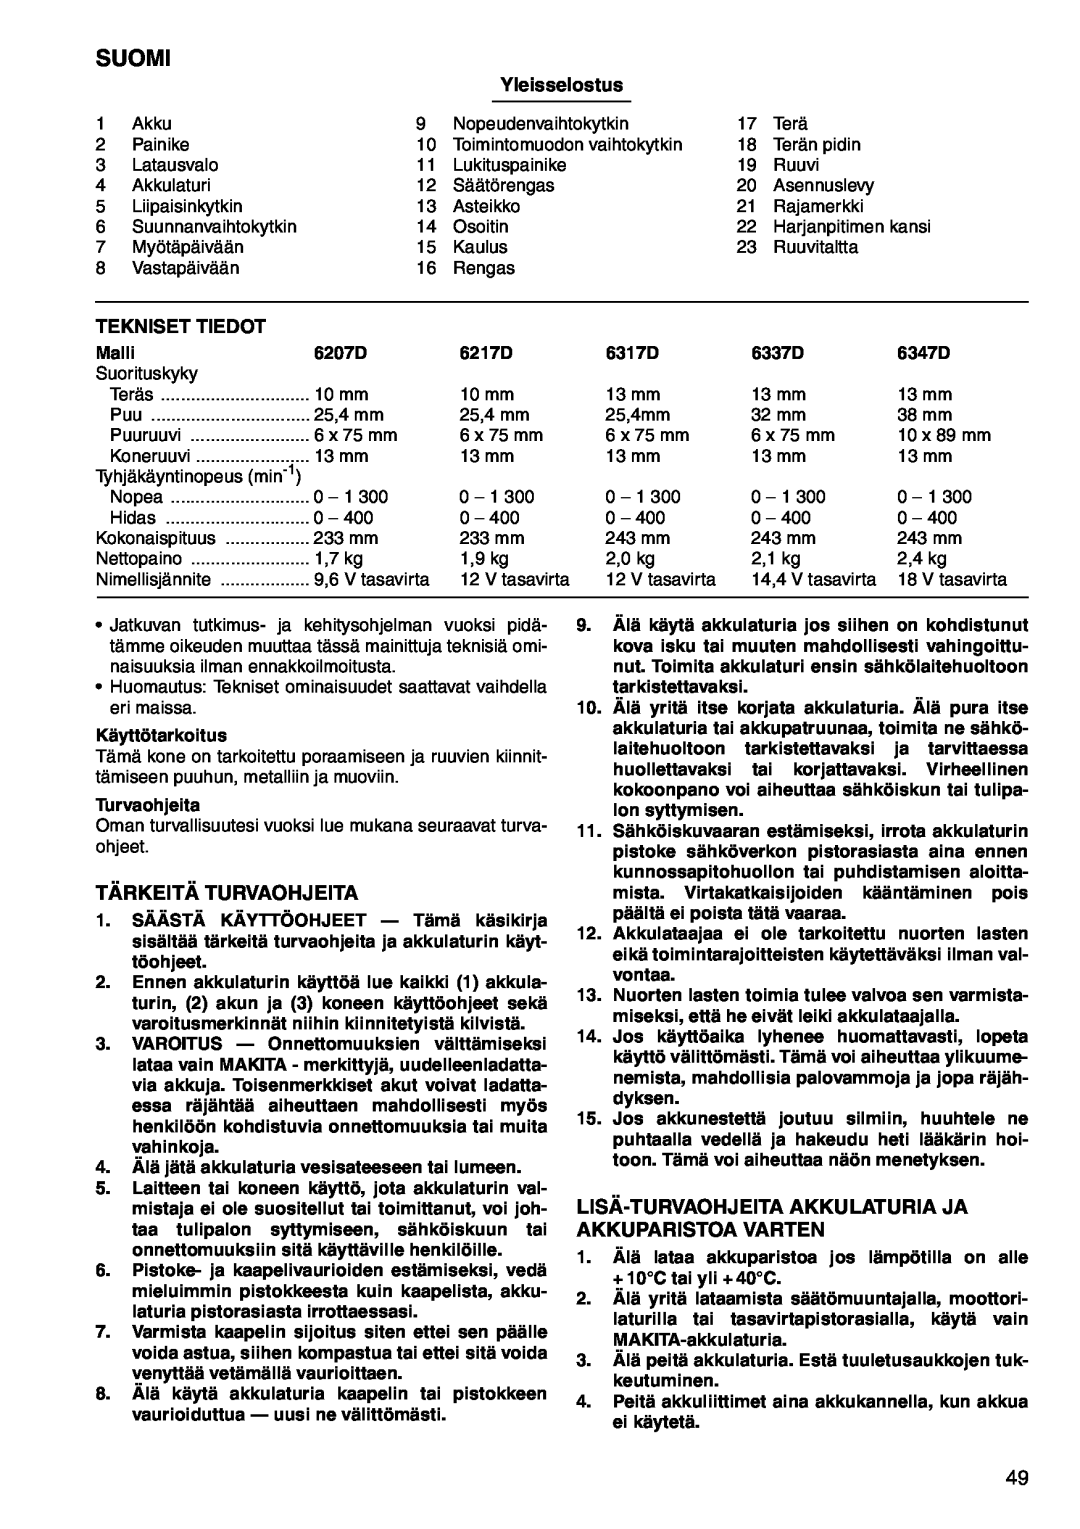 Makita 6207D, 6347D Suomi, Tärkeitä Turvaohjeita, Lisä-Turvaohjeita Akkulaturia Ja Akkuparistoa Varten, Yleisselostus 